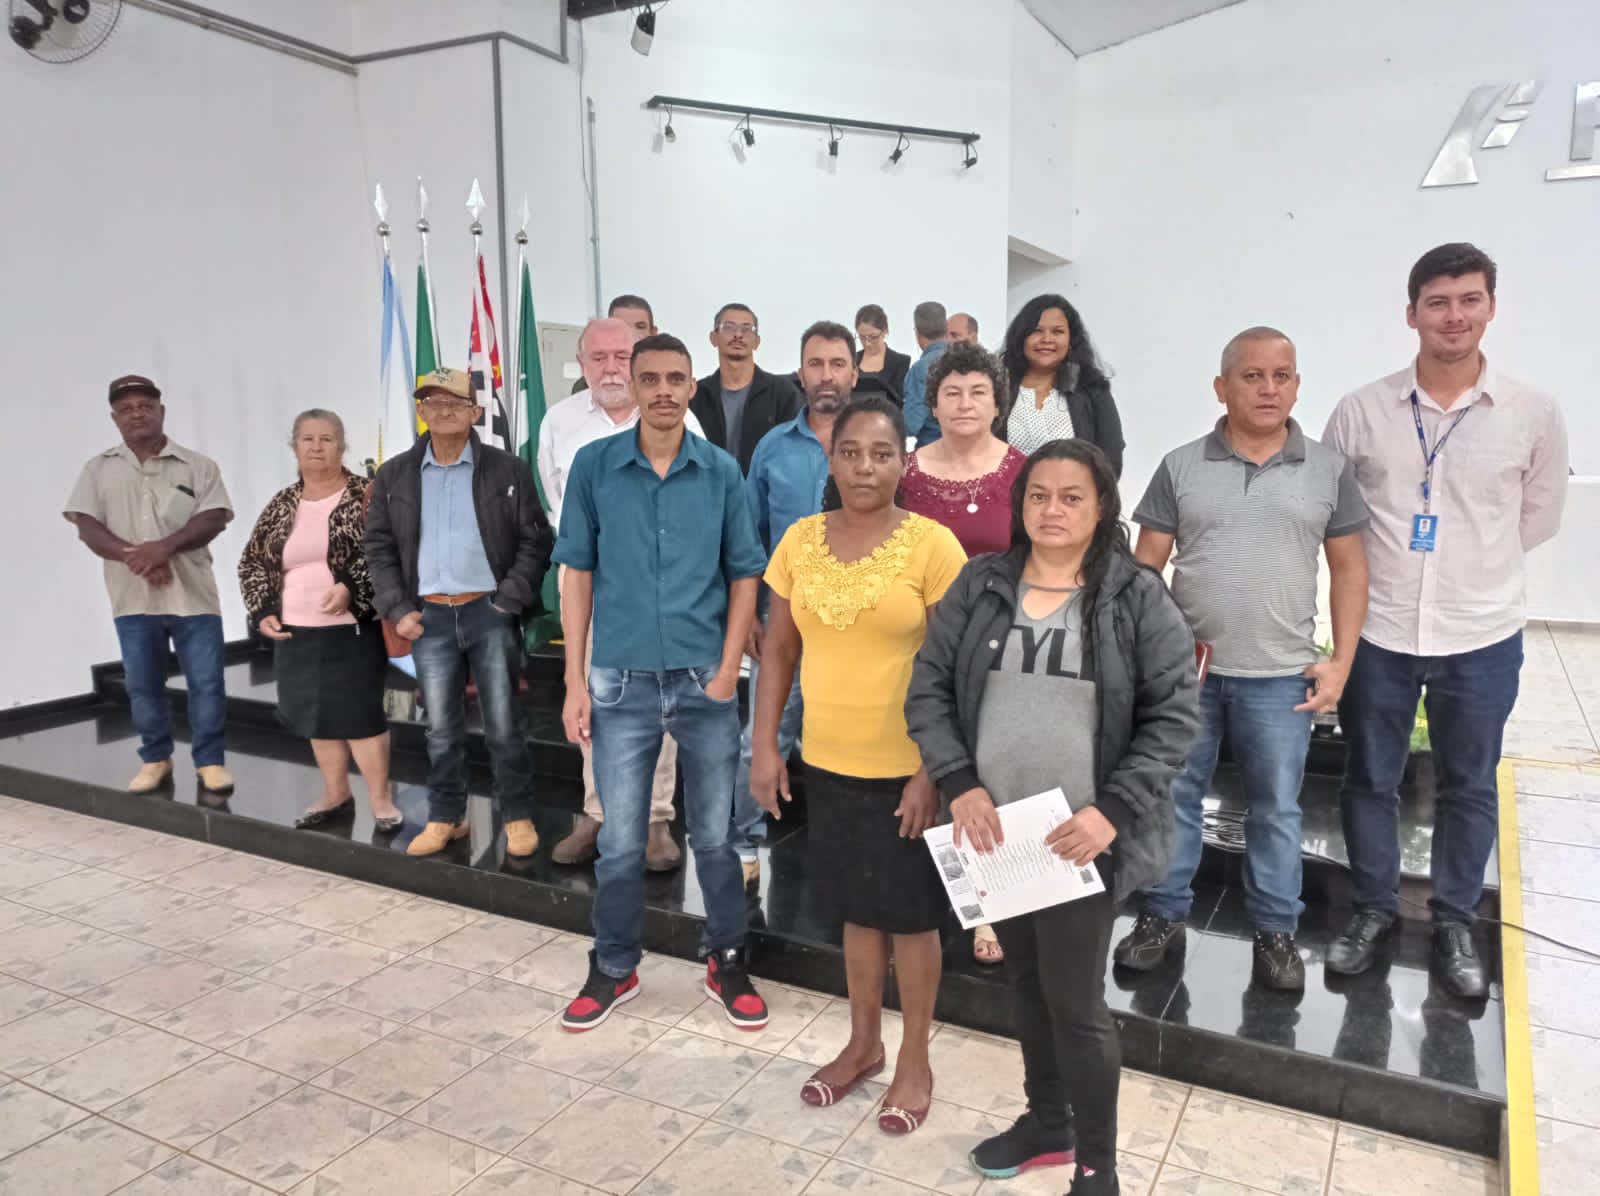 Agricultores de Itararé (SP) participam do 56º Ciclo de Palestras Álvaro Santos Costa em Itapeva (SP)